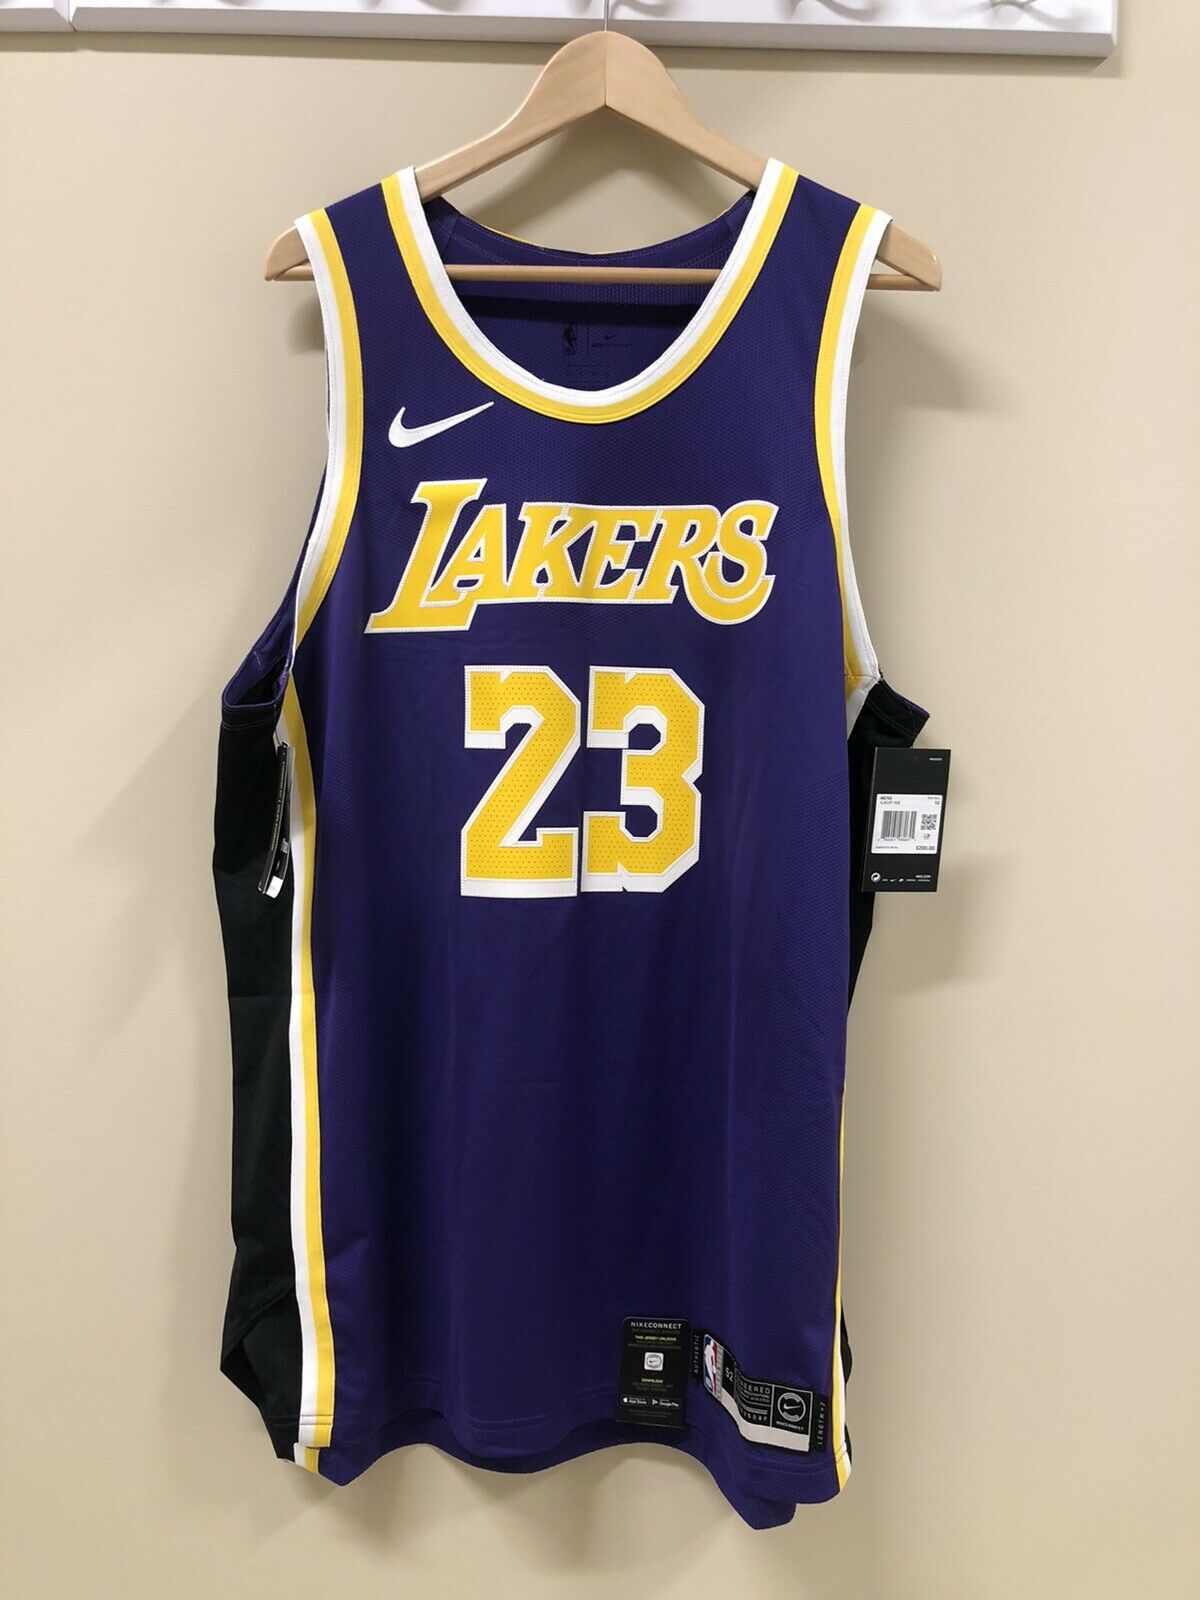 Nike Men Lebron James Lakers Jersey Aj5197-505 Size 52 Xl Vaporknit Purple